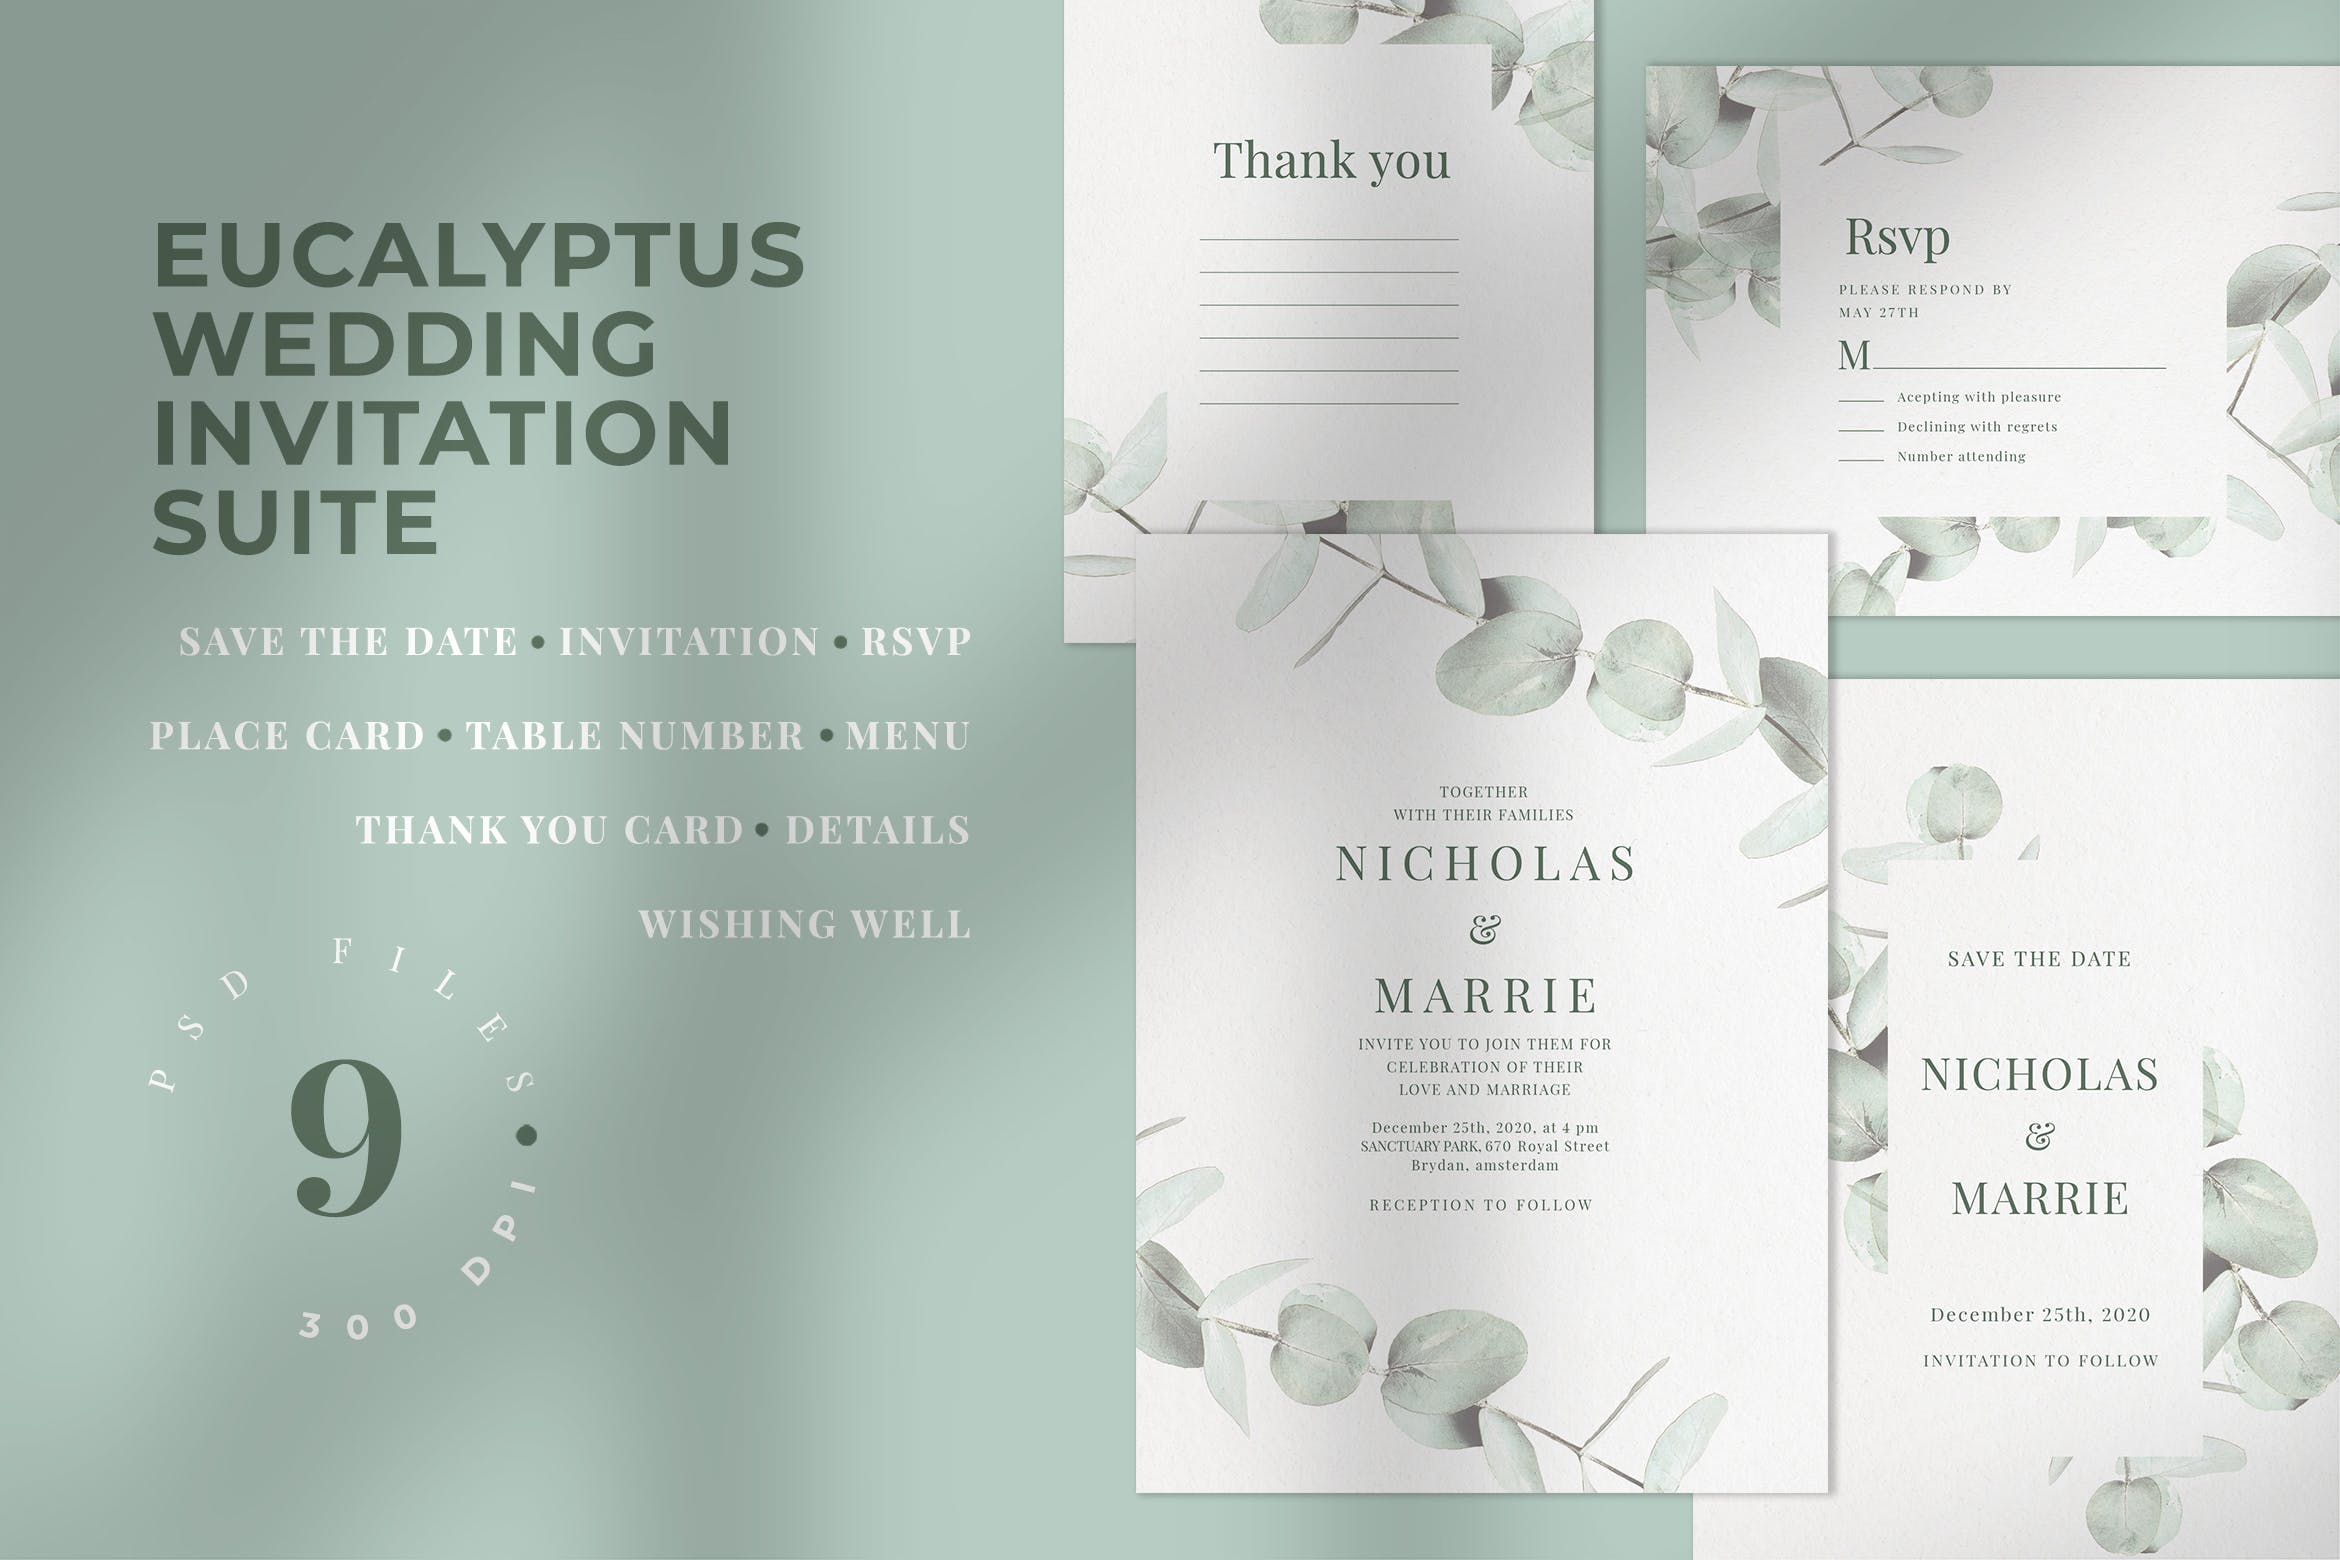 桉树装饰元素婚礼邀请设计素材包 Eucalyptus Wedding Invitation Suite插图